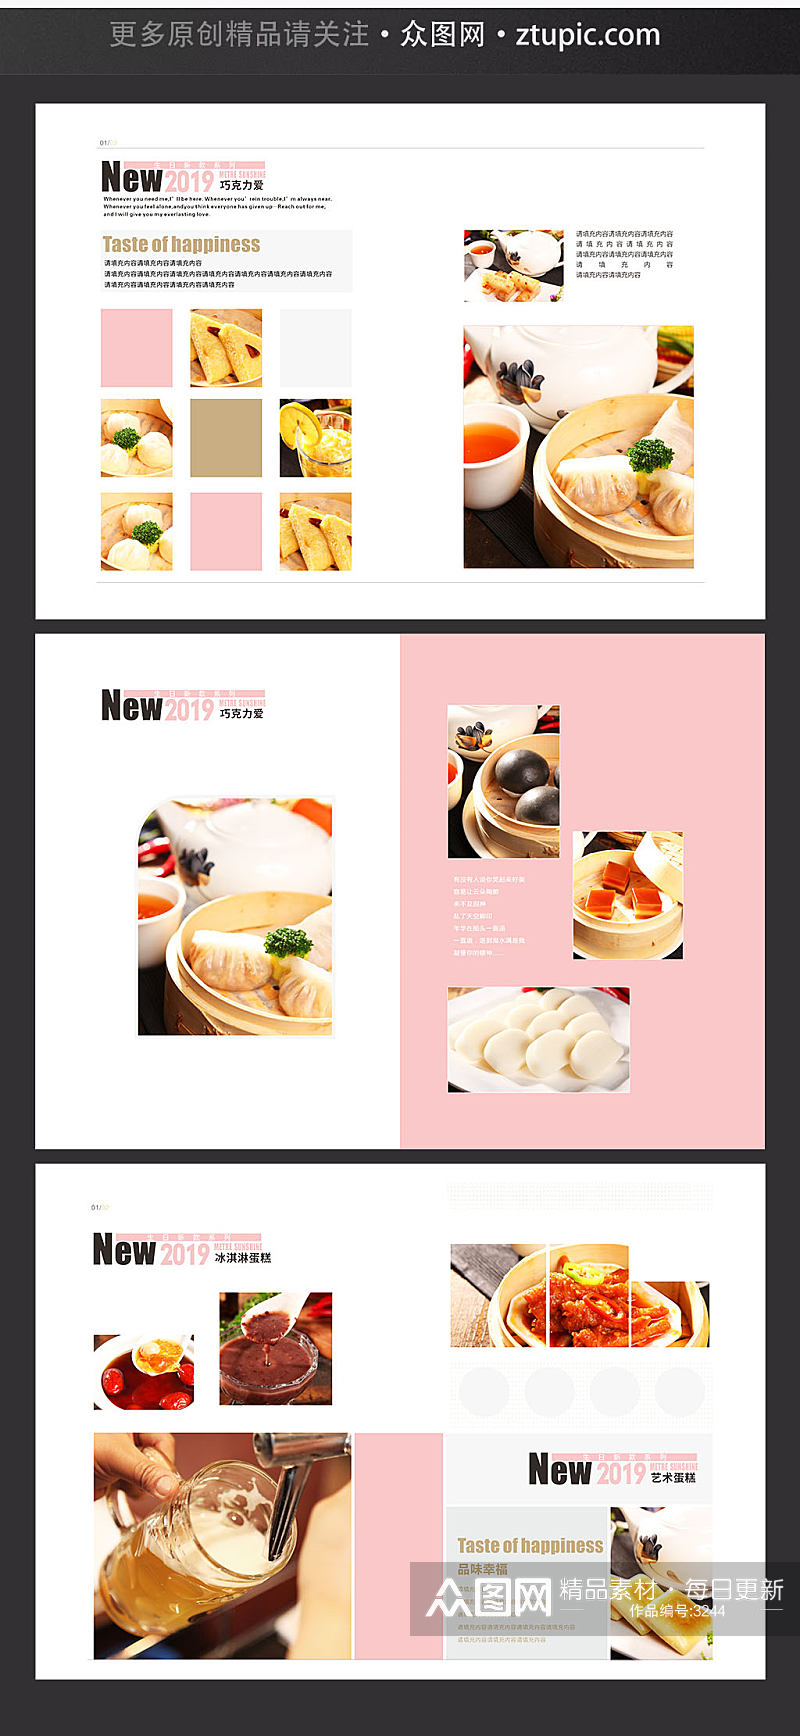 调料文化 美食调料画册设计素材